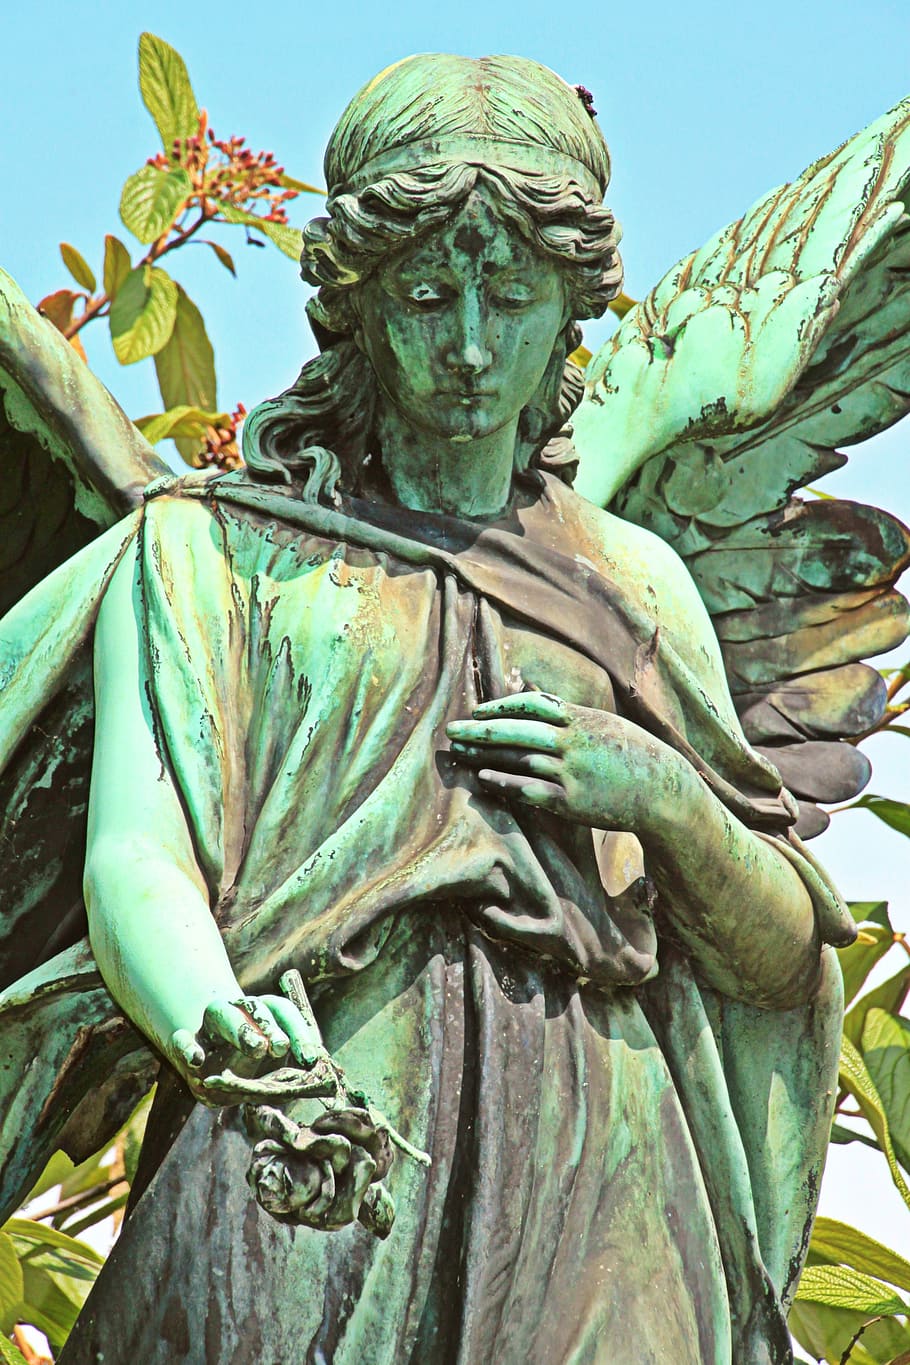 cemitério, frauengestslt, túmulo, figura de anjo, anjo, asa, sepultura, lápide, local de descanso, escultura em bronze